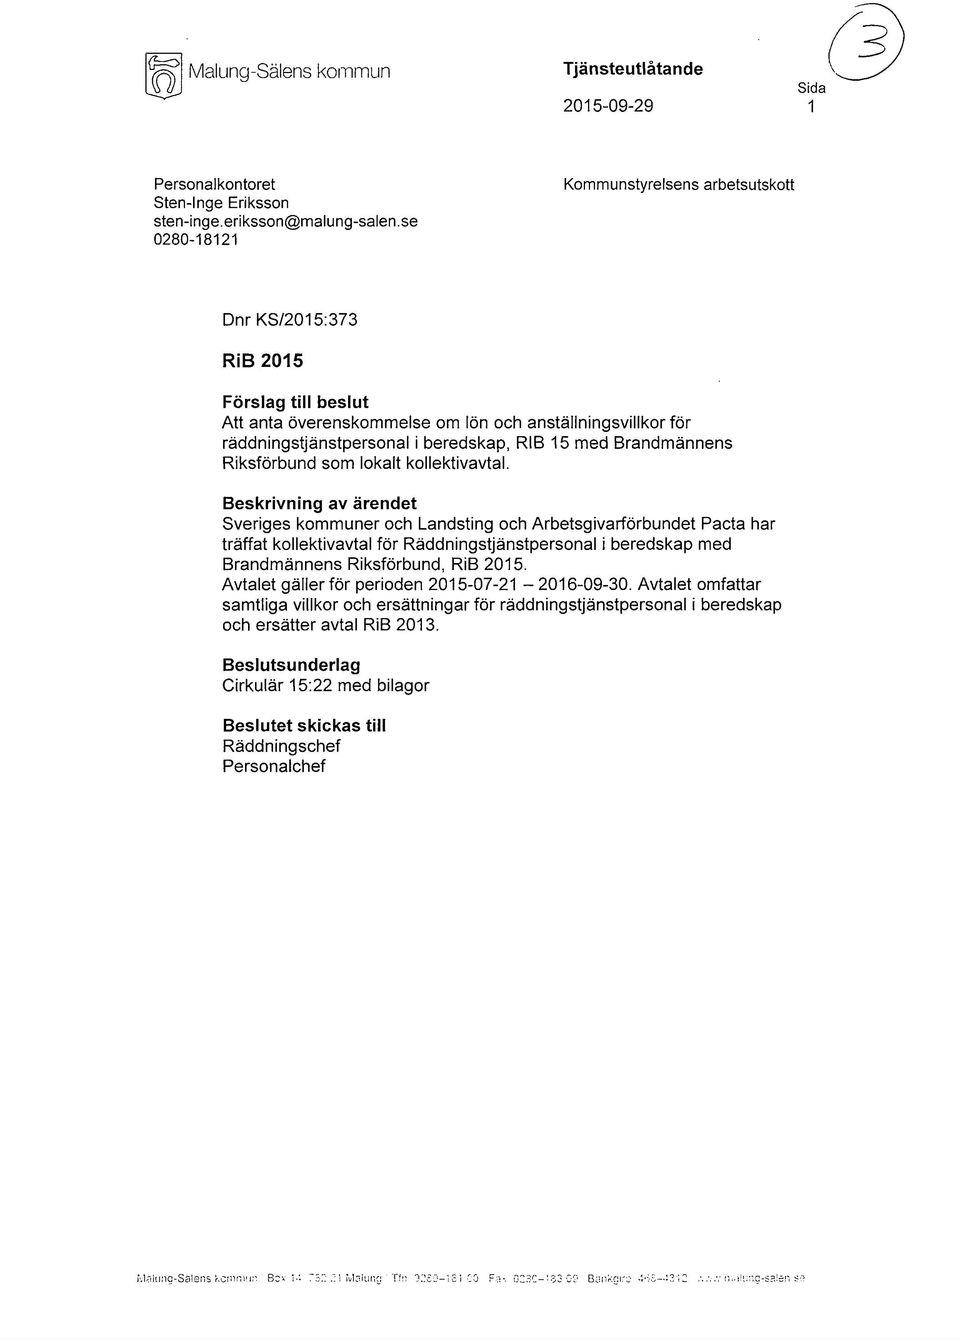 Brandmännens Riksförbund som lokalt kollektivavtal.